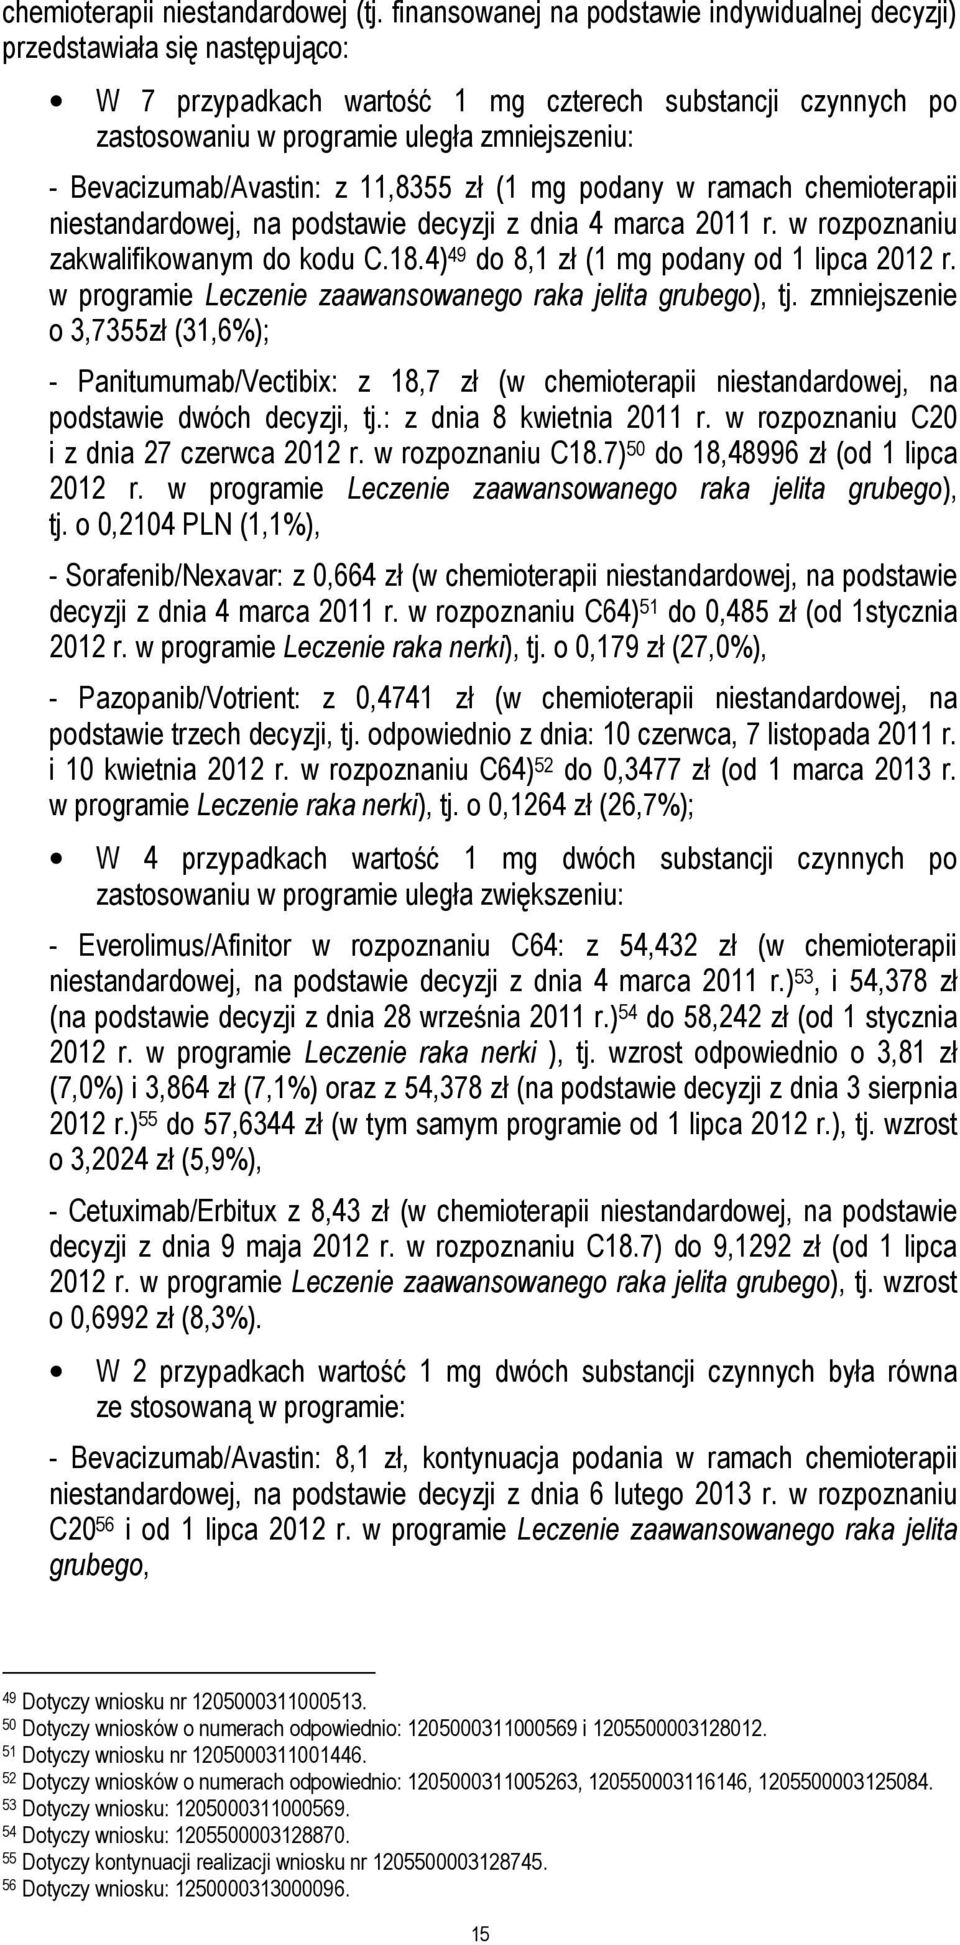 Bevacizumab/Avastin: z 11,8355 zł (1 mg podany w ramach chemioterapii niestandardowej, na podstawie decyzji z dnia 4 marca 2011 r. w rozpoznaniu zakwalifikowanym do kodu C.18.